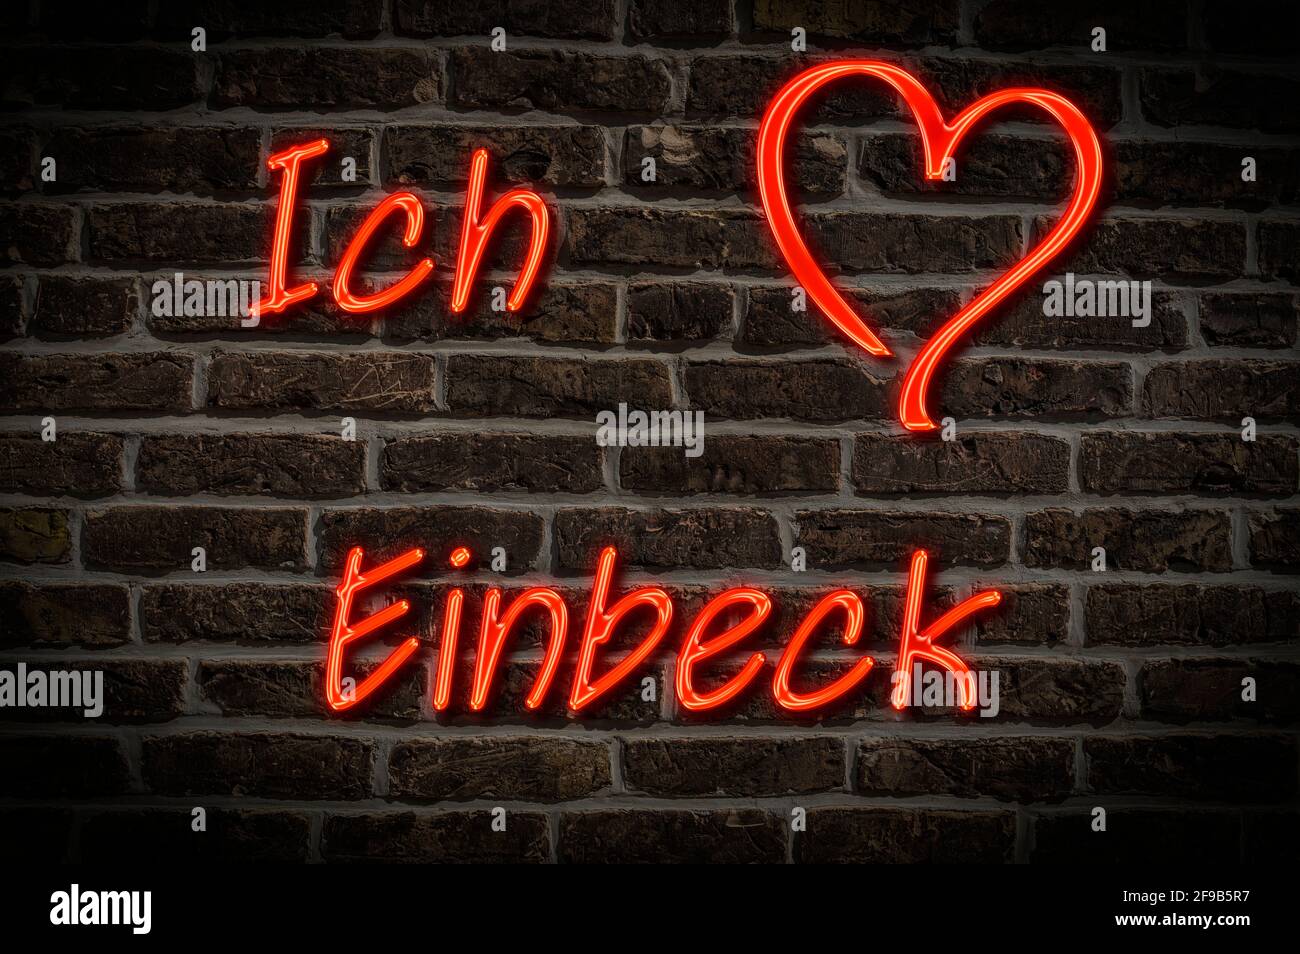 Leuchtreklame, Ich liebe Einbeck, Niedersachsen, Deutschland, Europa | Illuminated advertising, I love Einbeck, Lower Saxony, Germany, Europe Stock Photo